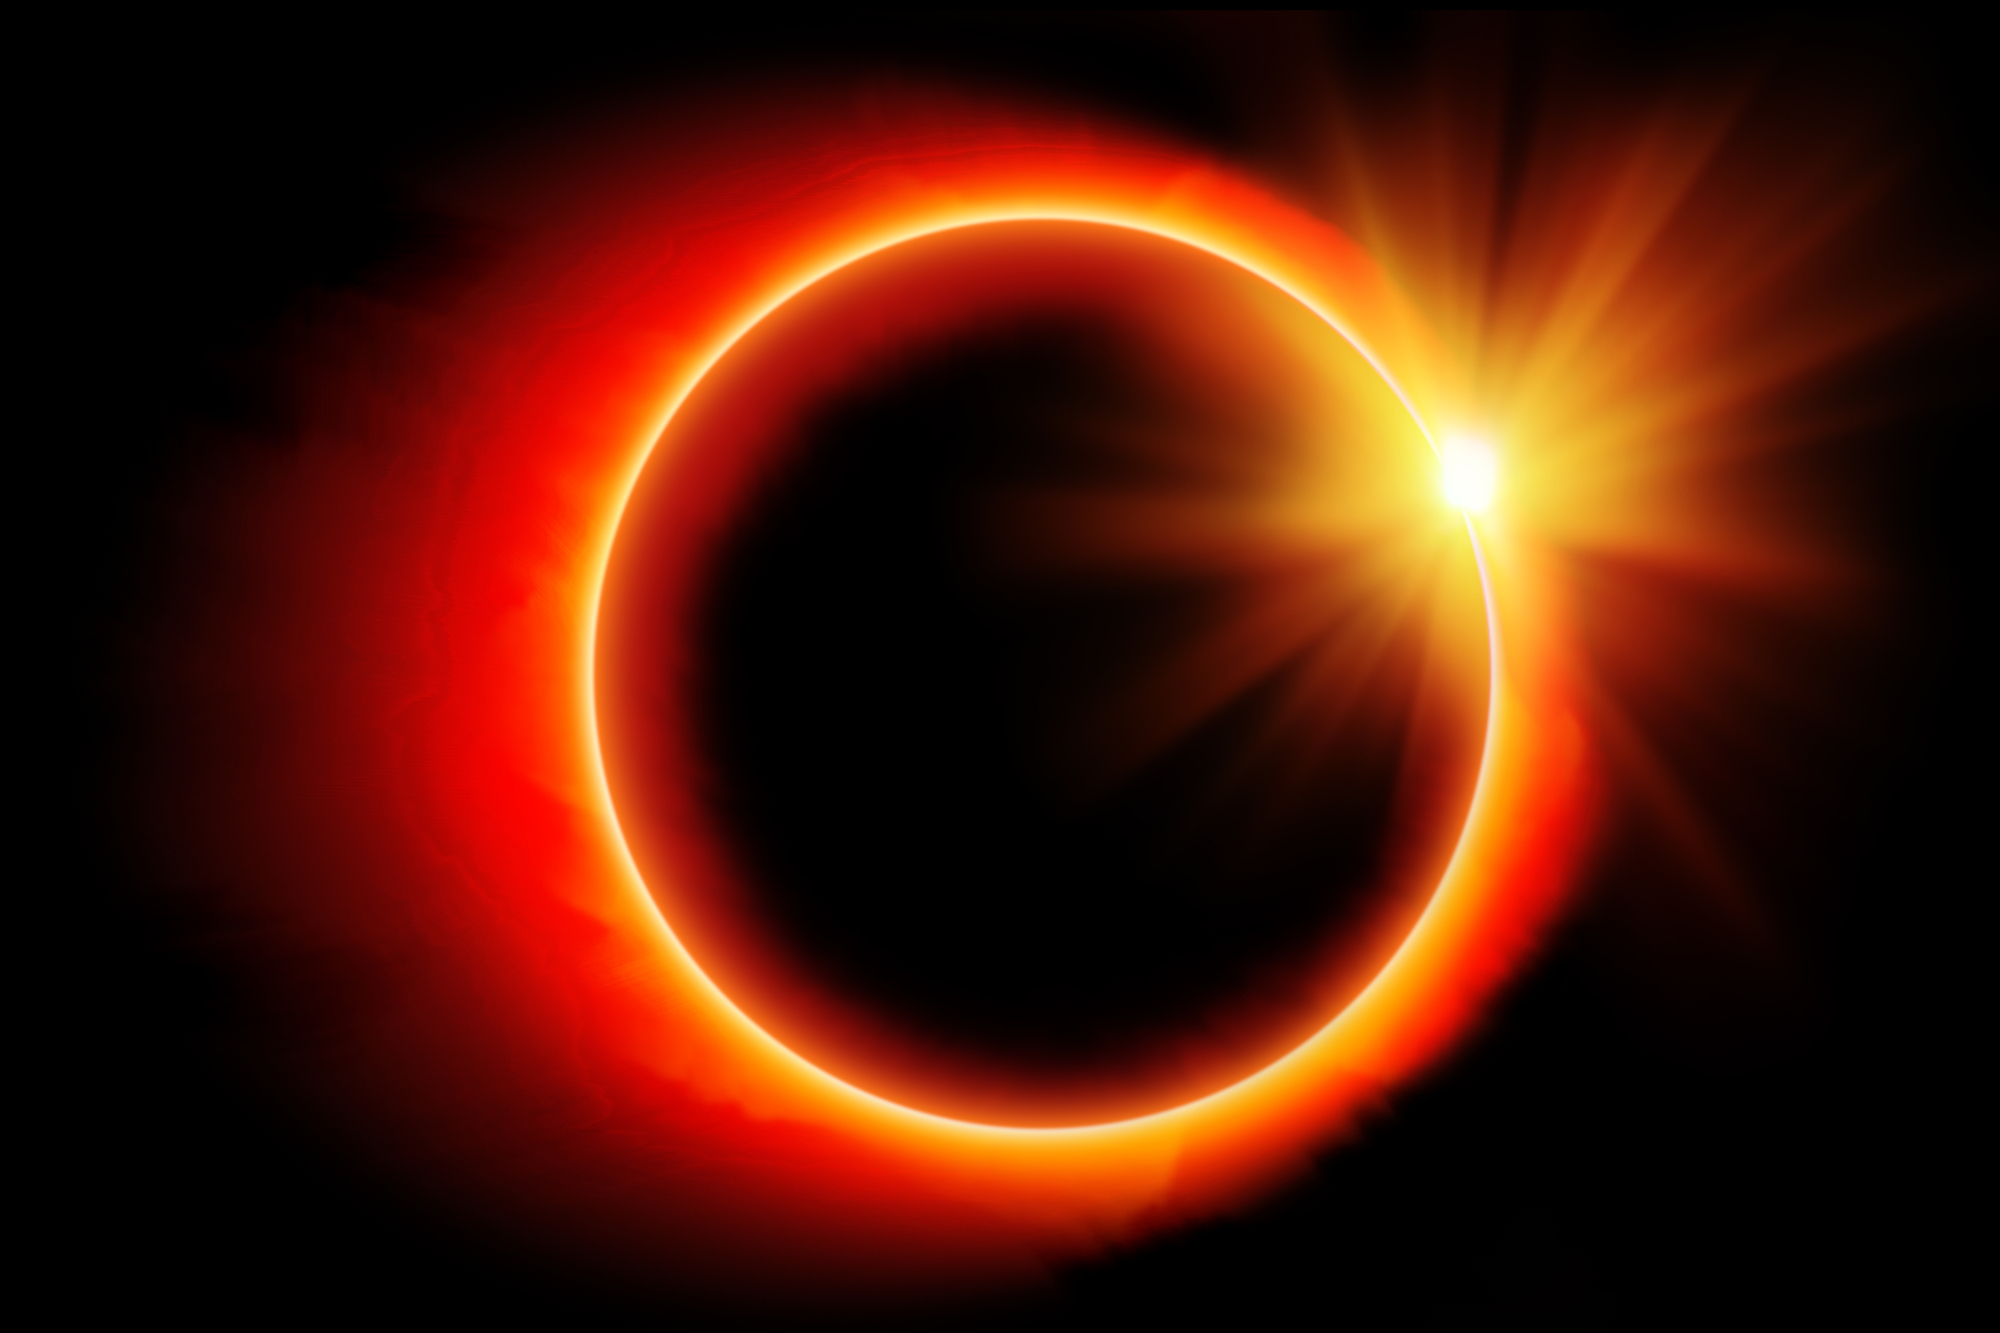 México tendrá dos eclipses solares en 2023 y 2024. ¿Dónde verlos?